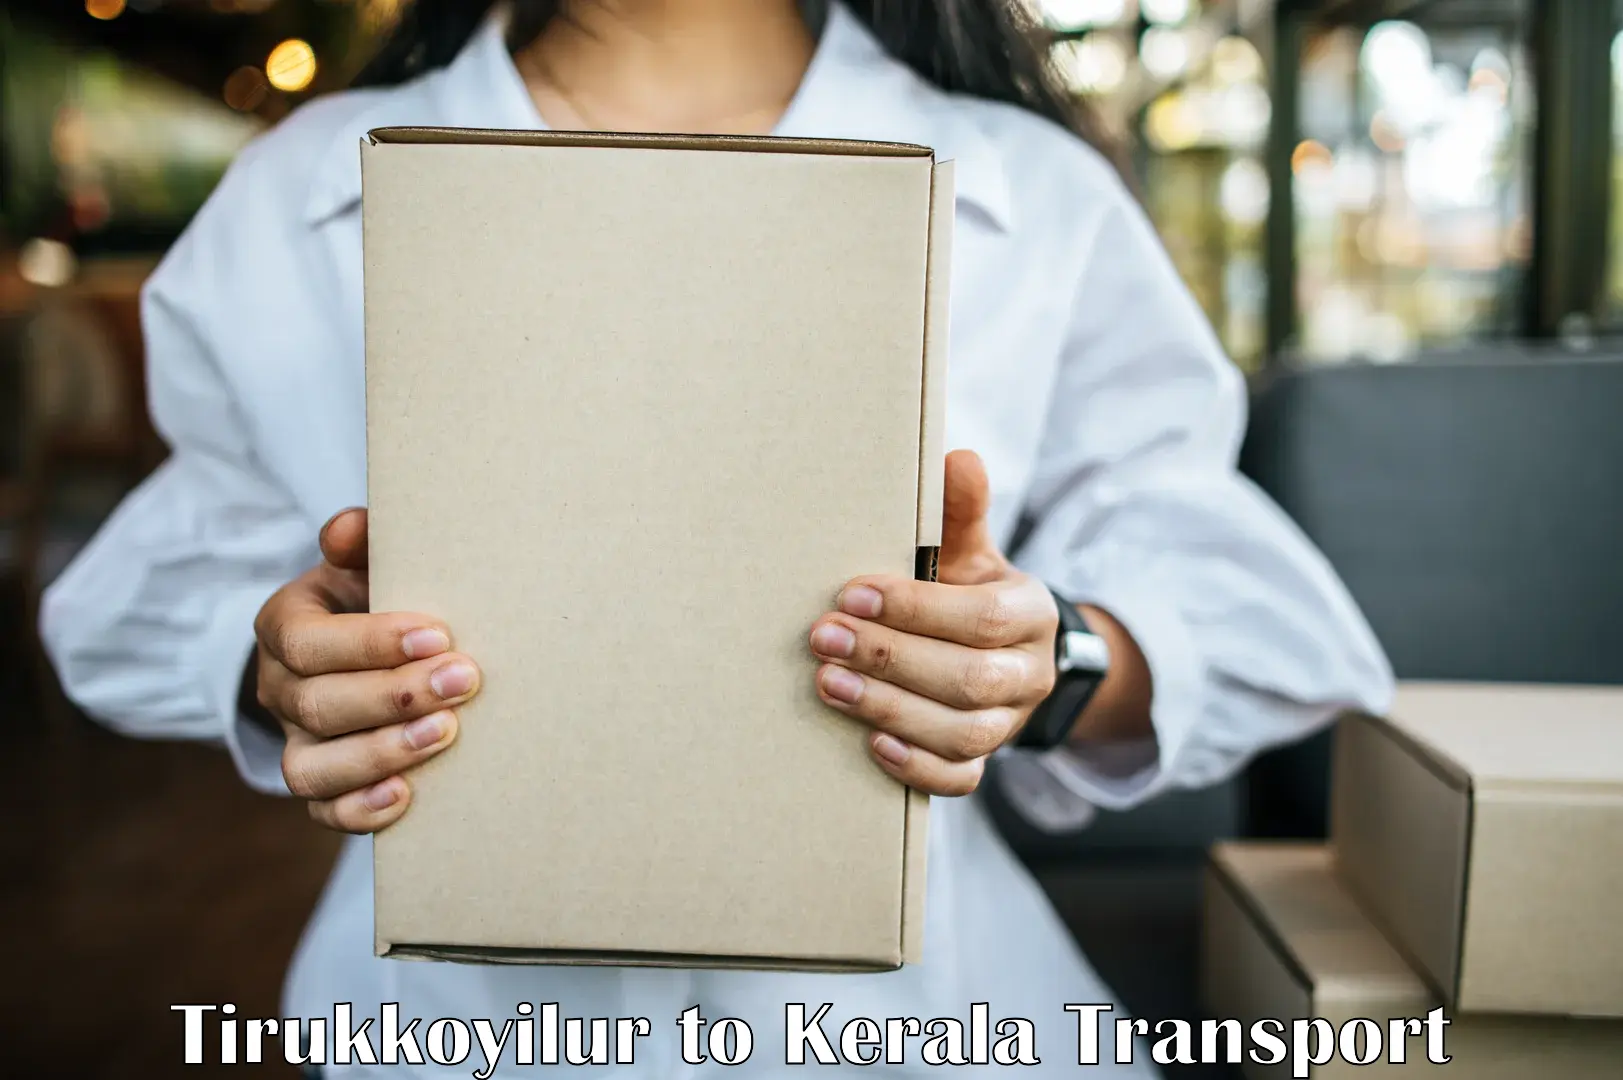 Transport in sharing Tirukkoyilur to Parappa